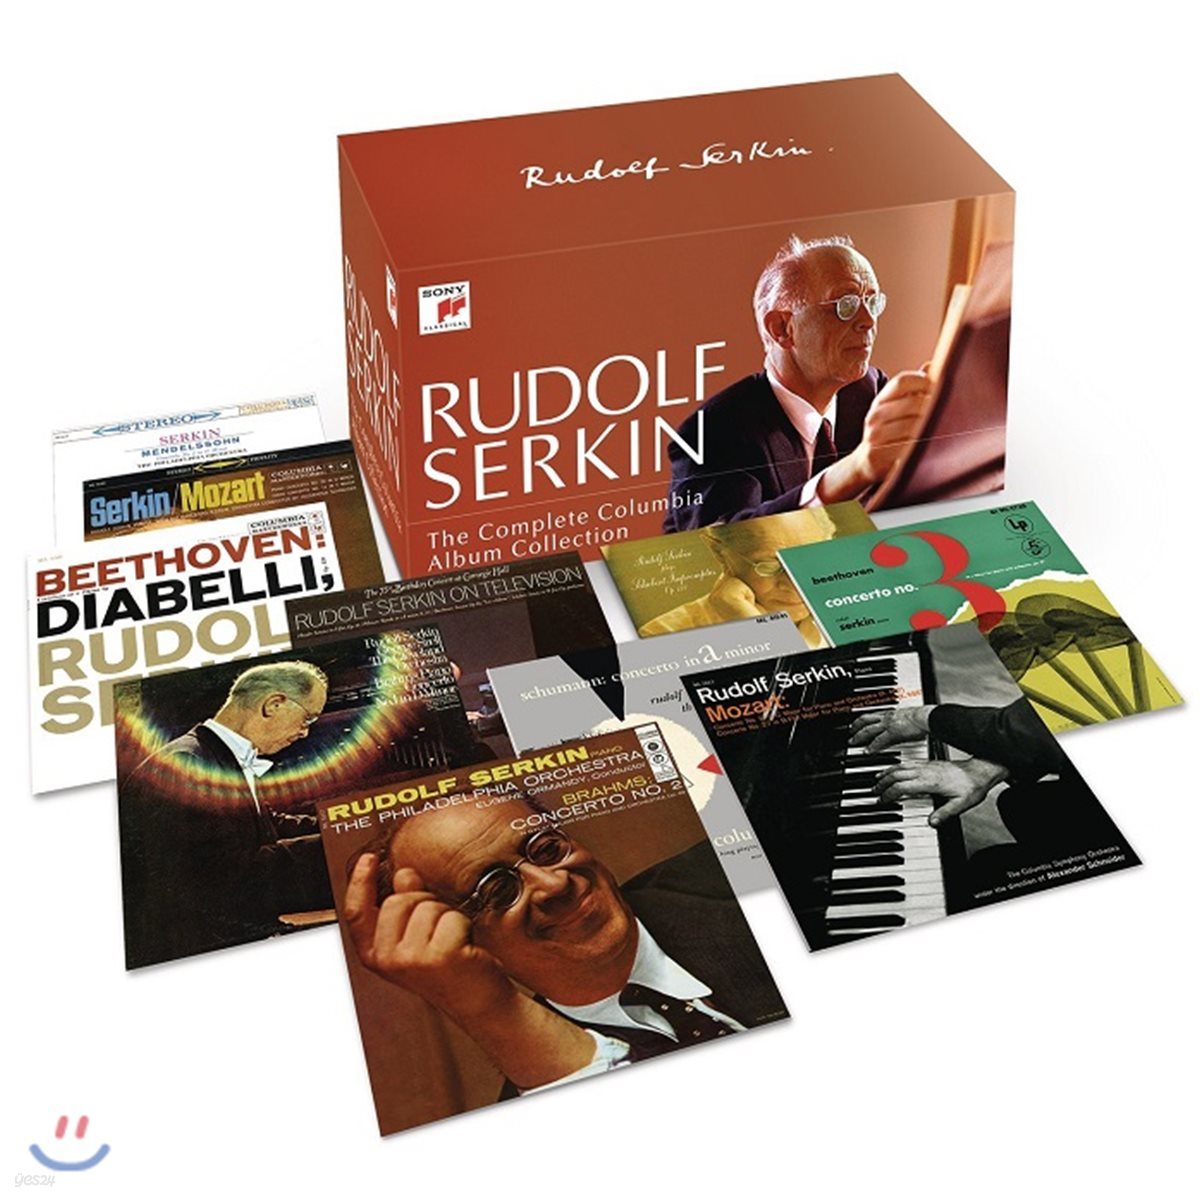 루돌프 제르킨 - 콜럼비아 앨범 컬렉션 75CD 박스세트 전집 (Rudolf Serkin - The Complete Columbia Album Collection)